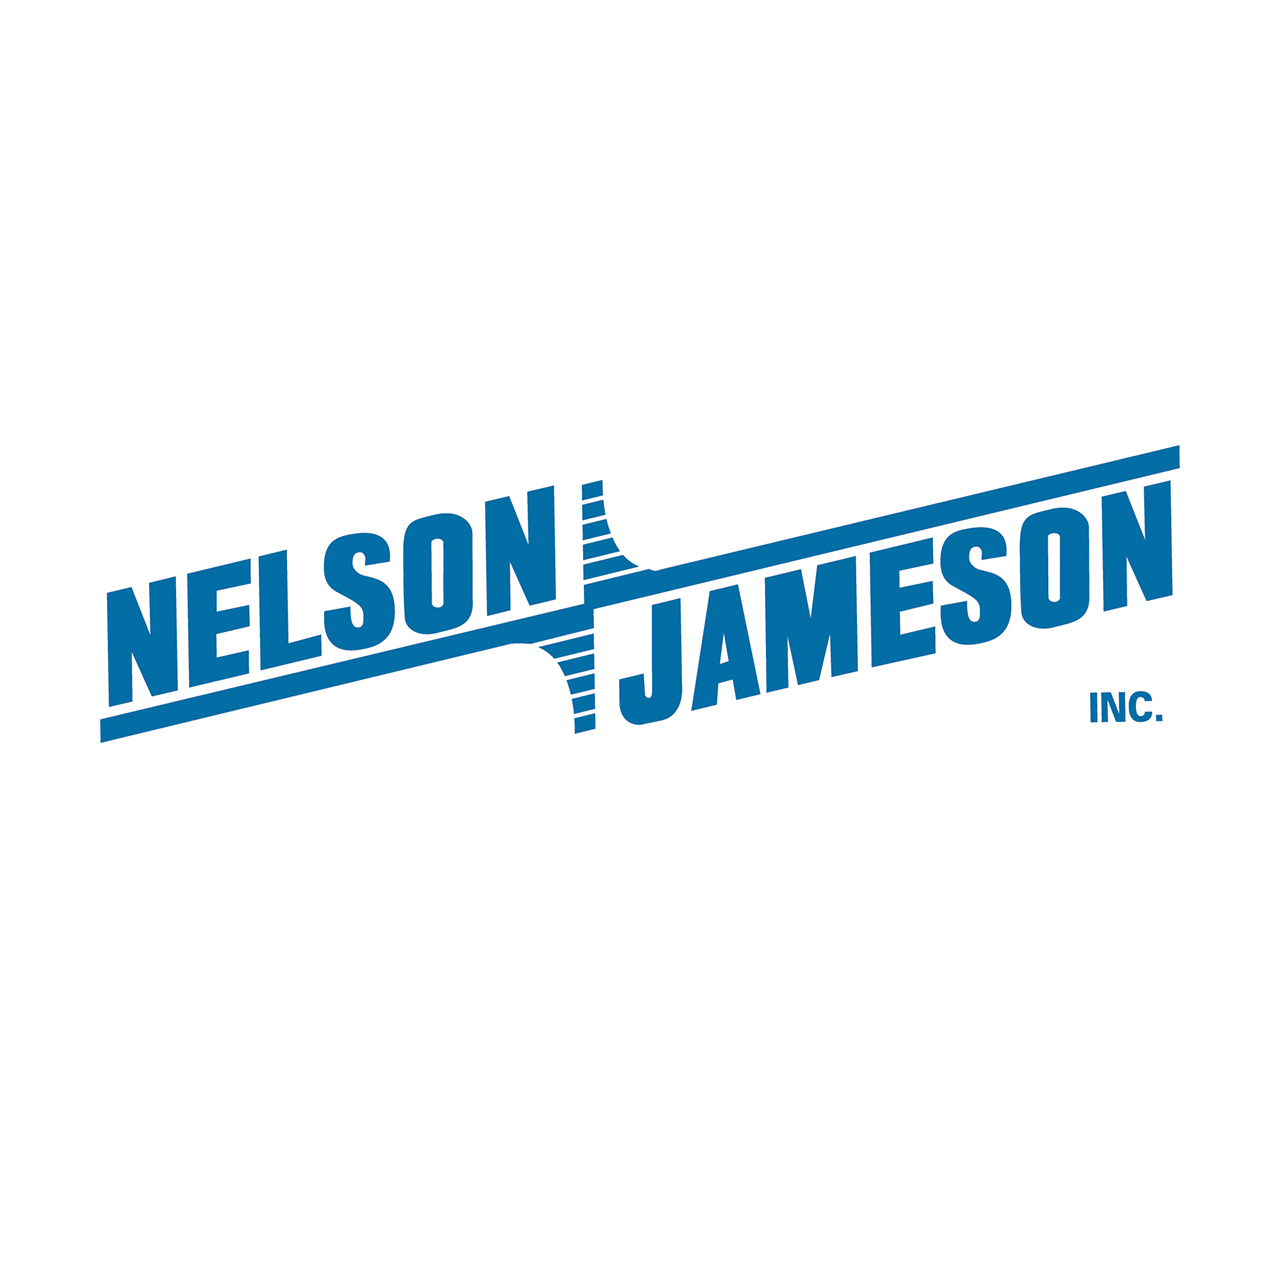 Nelson-Jameson Water Activity Meter